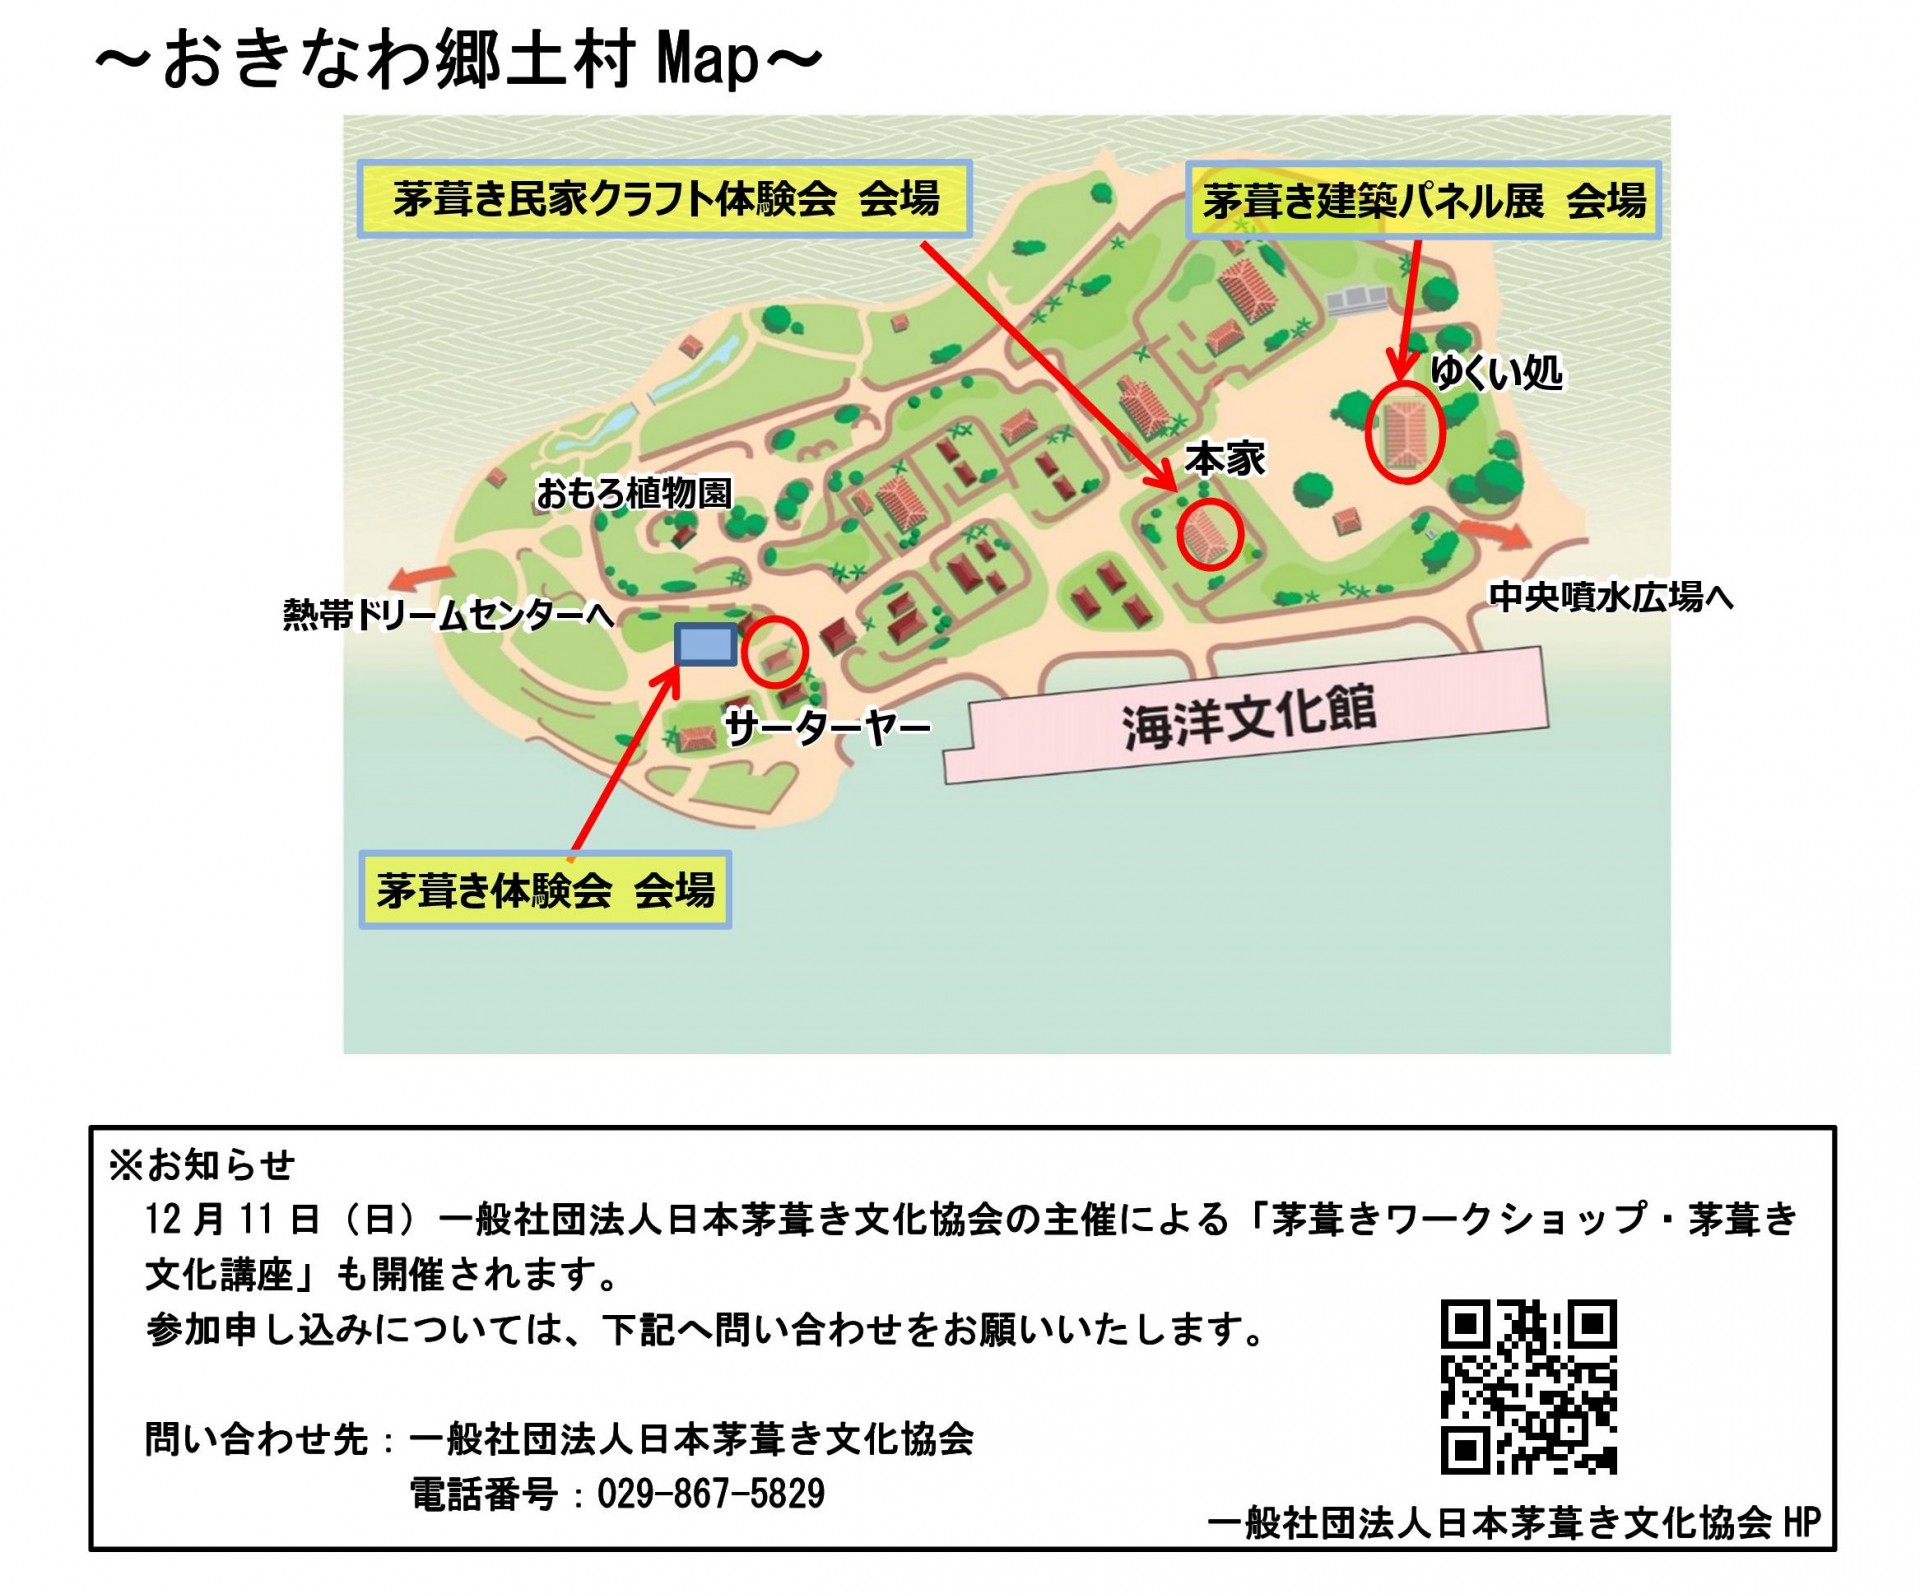 会場場所（おきなわ郷土村map)